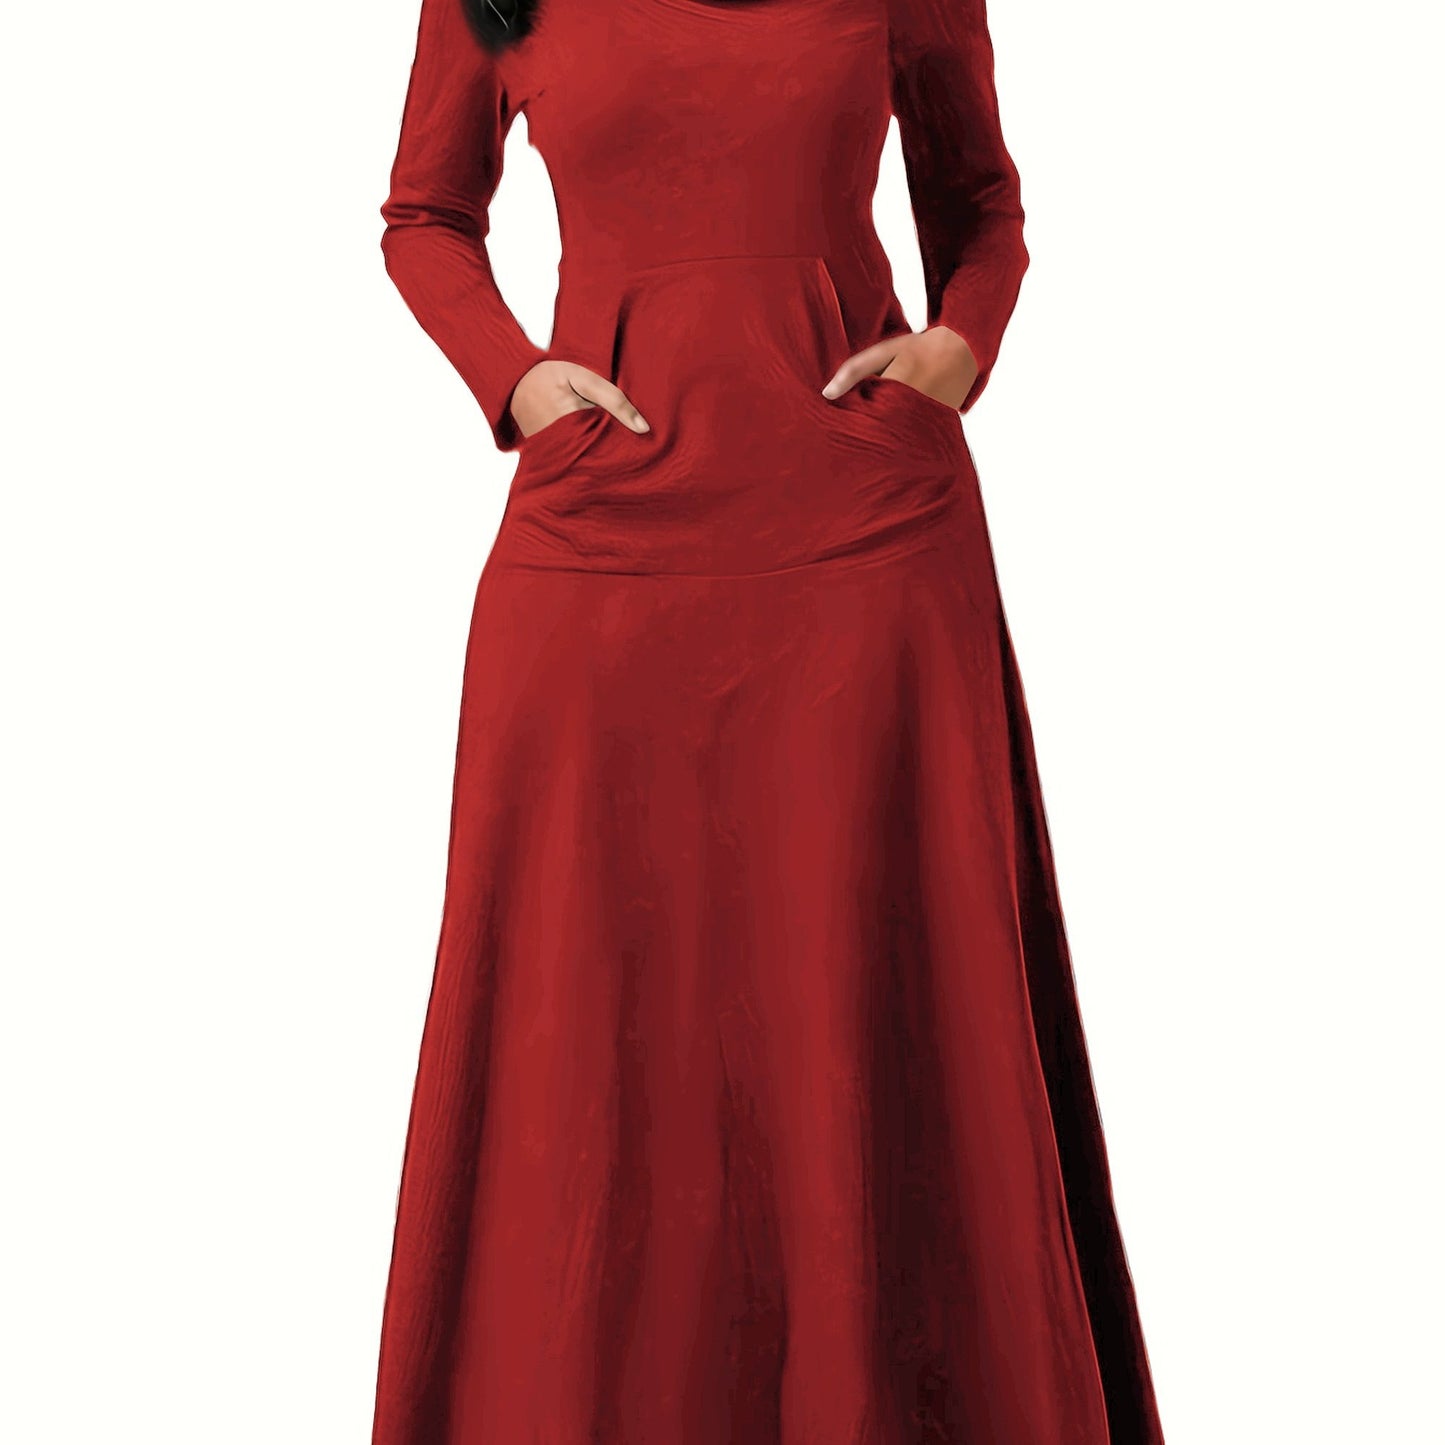 Antmvs Pile Collar Solid Maxi Dress, Elegant Long Sleeve Kangaroo Pocket Dress, Women's Clothing